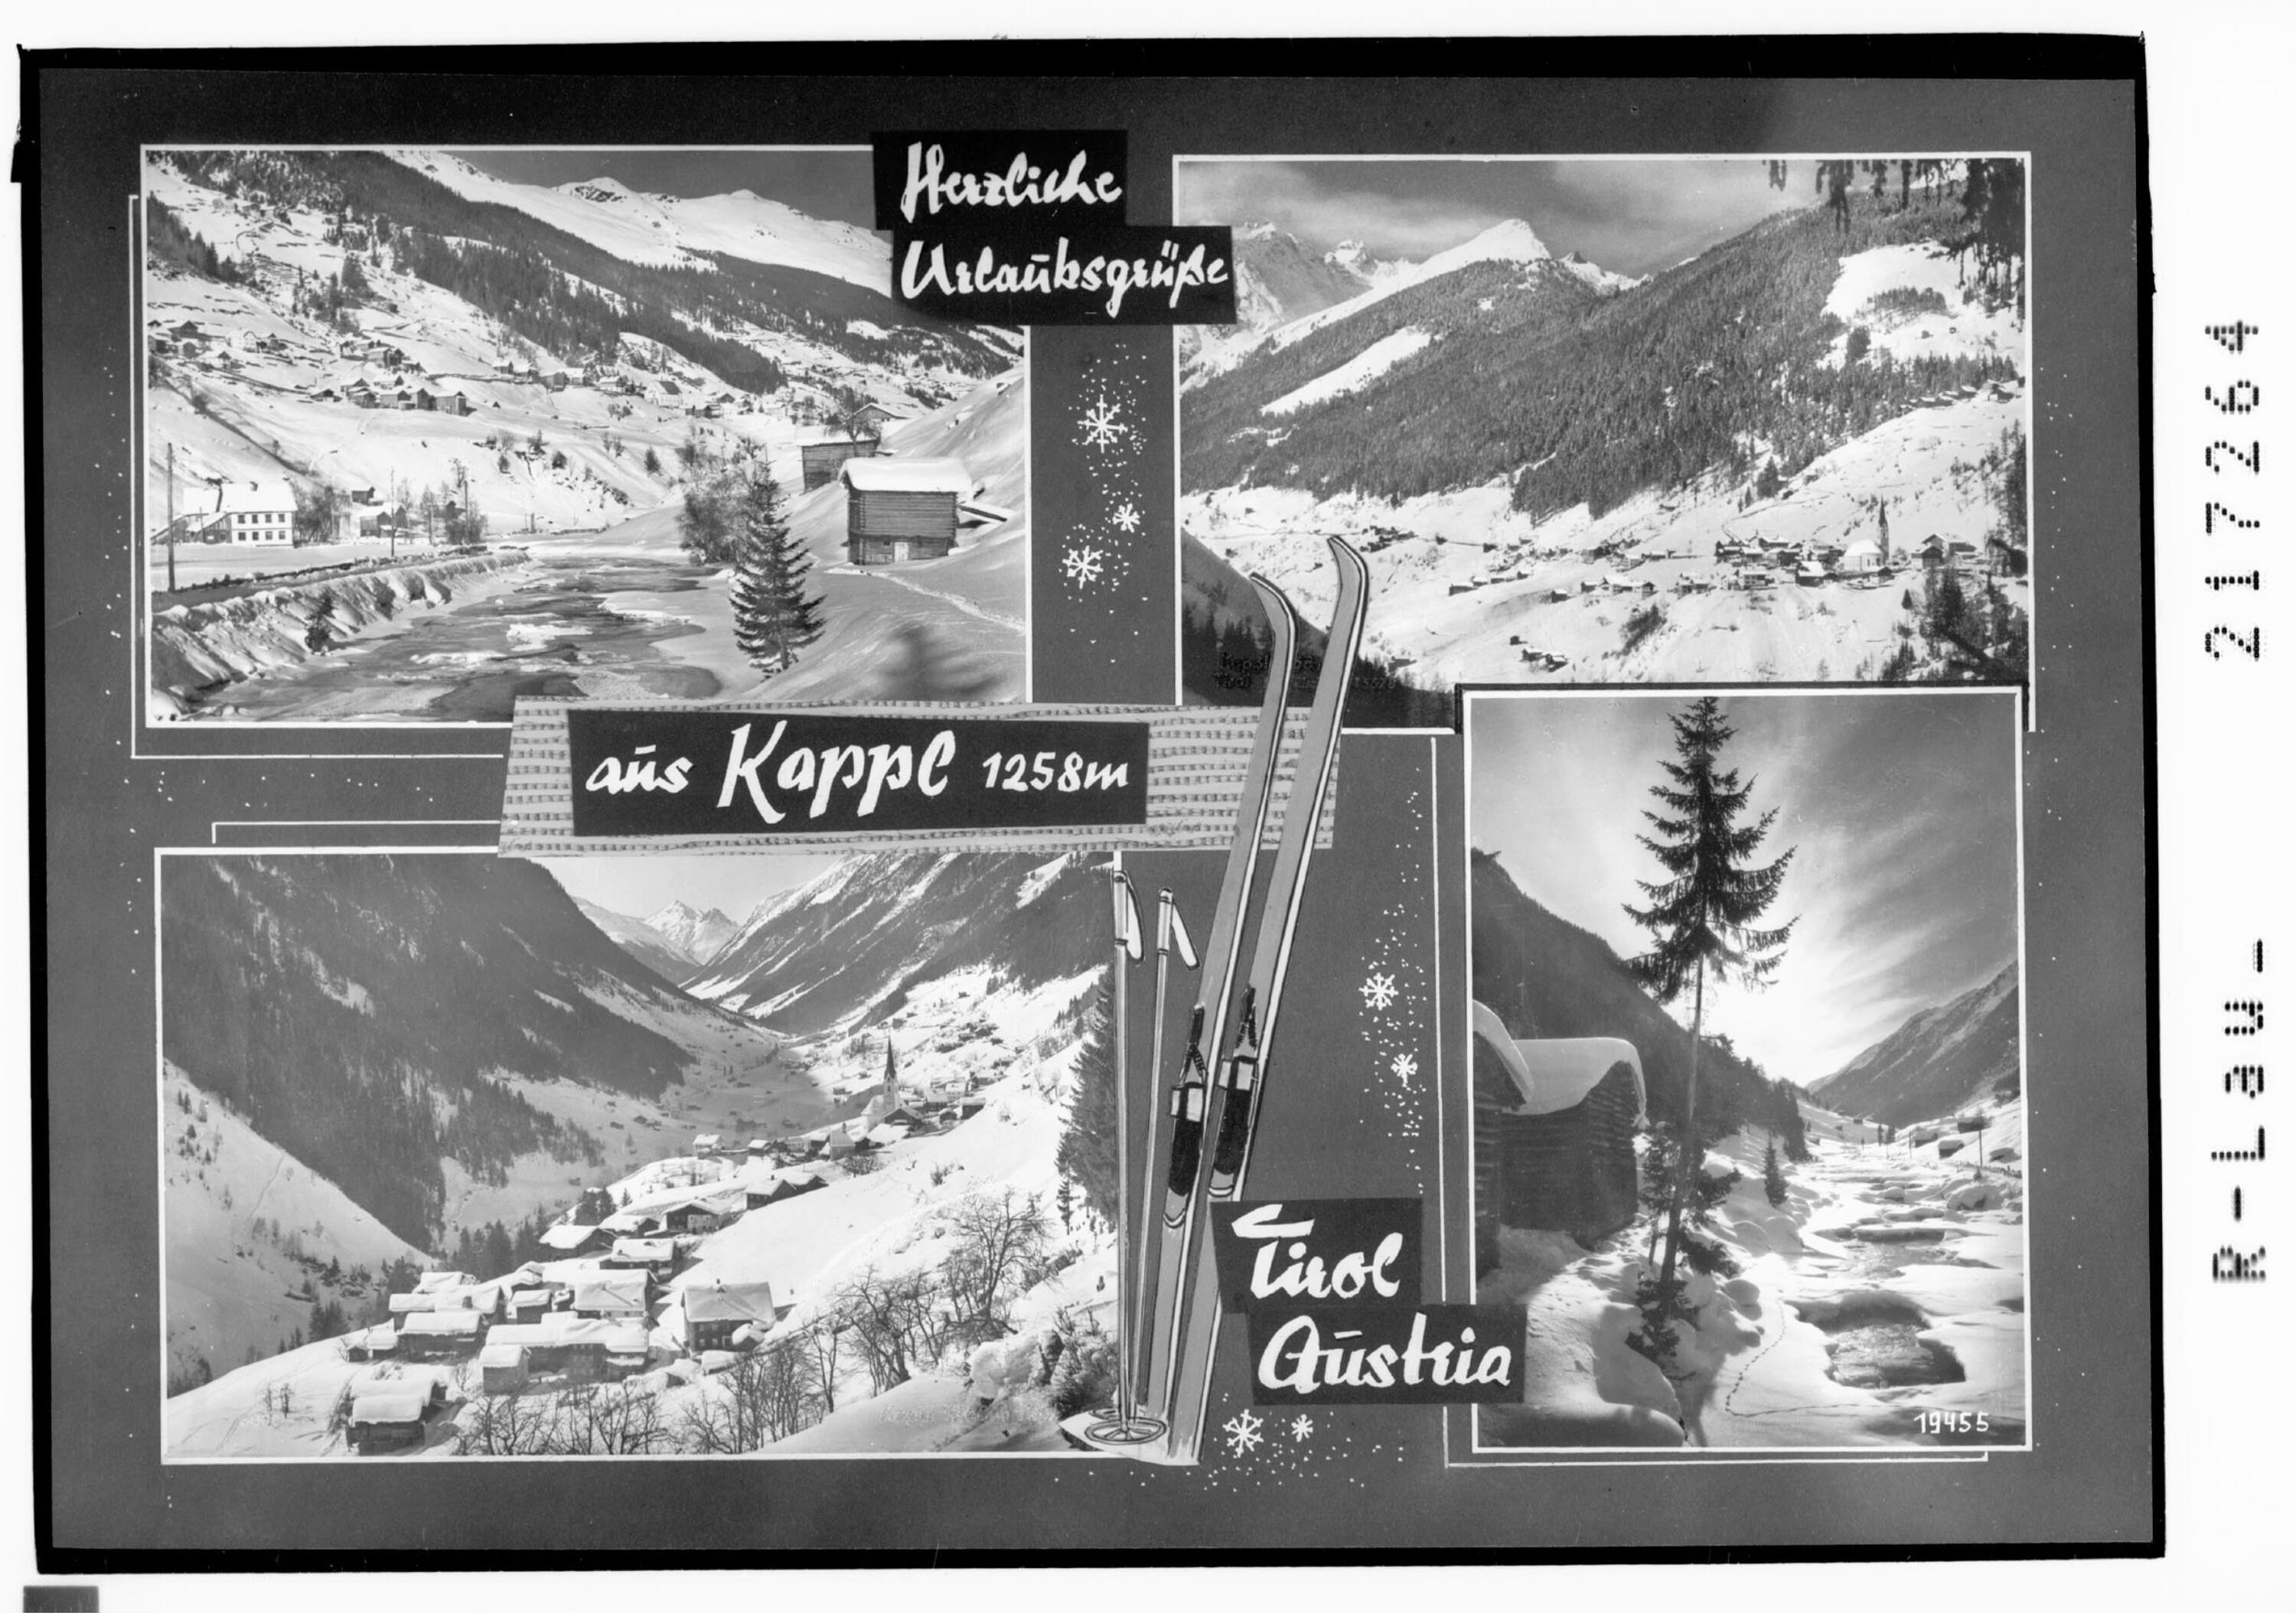 Herzliche Urlaubsgrüsse aus Kappl 1258 m / Tirol / Austria></div>


    <hr>
    <div class=